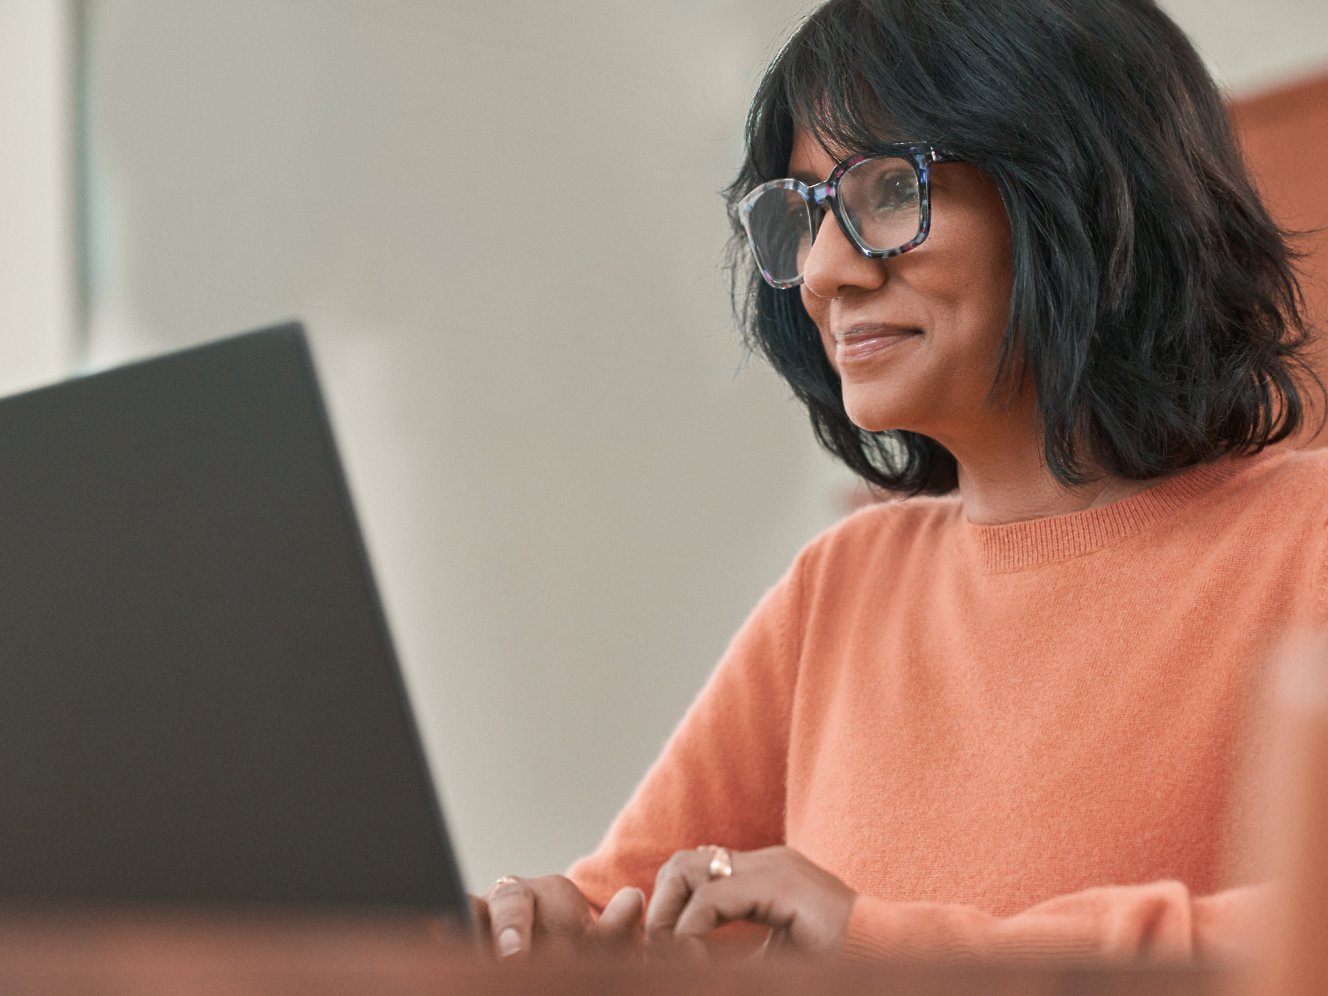 Μια γυναίκα με γυαλιά που εργάζεται με φορητό υπολογιστή